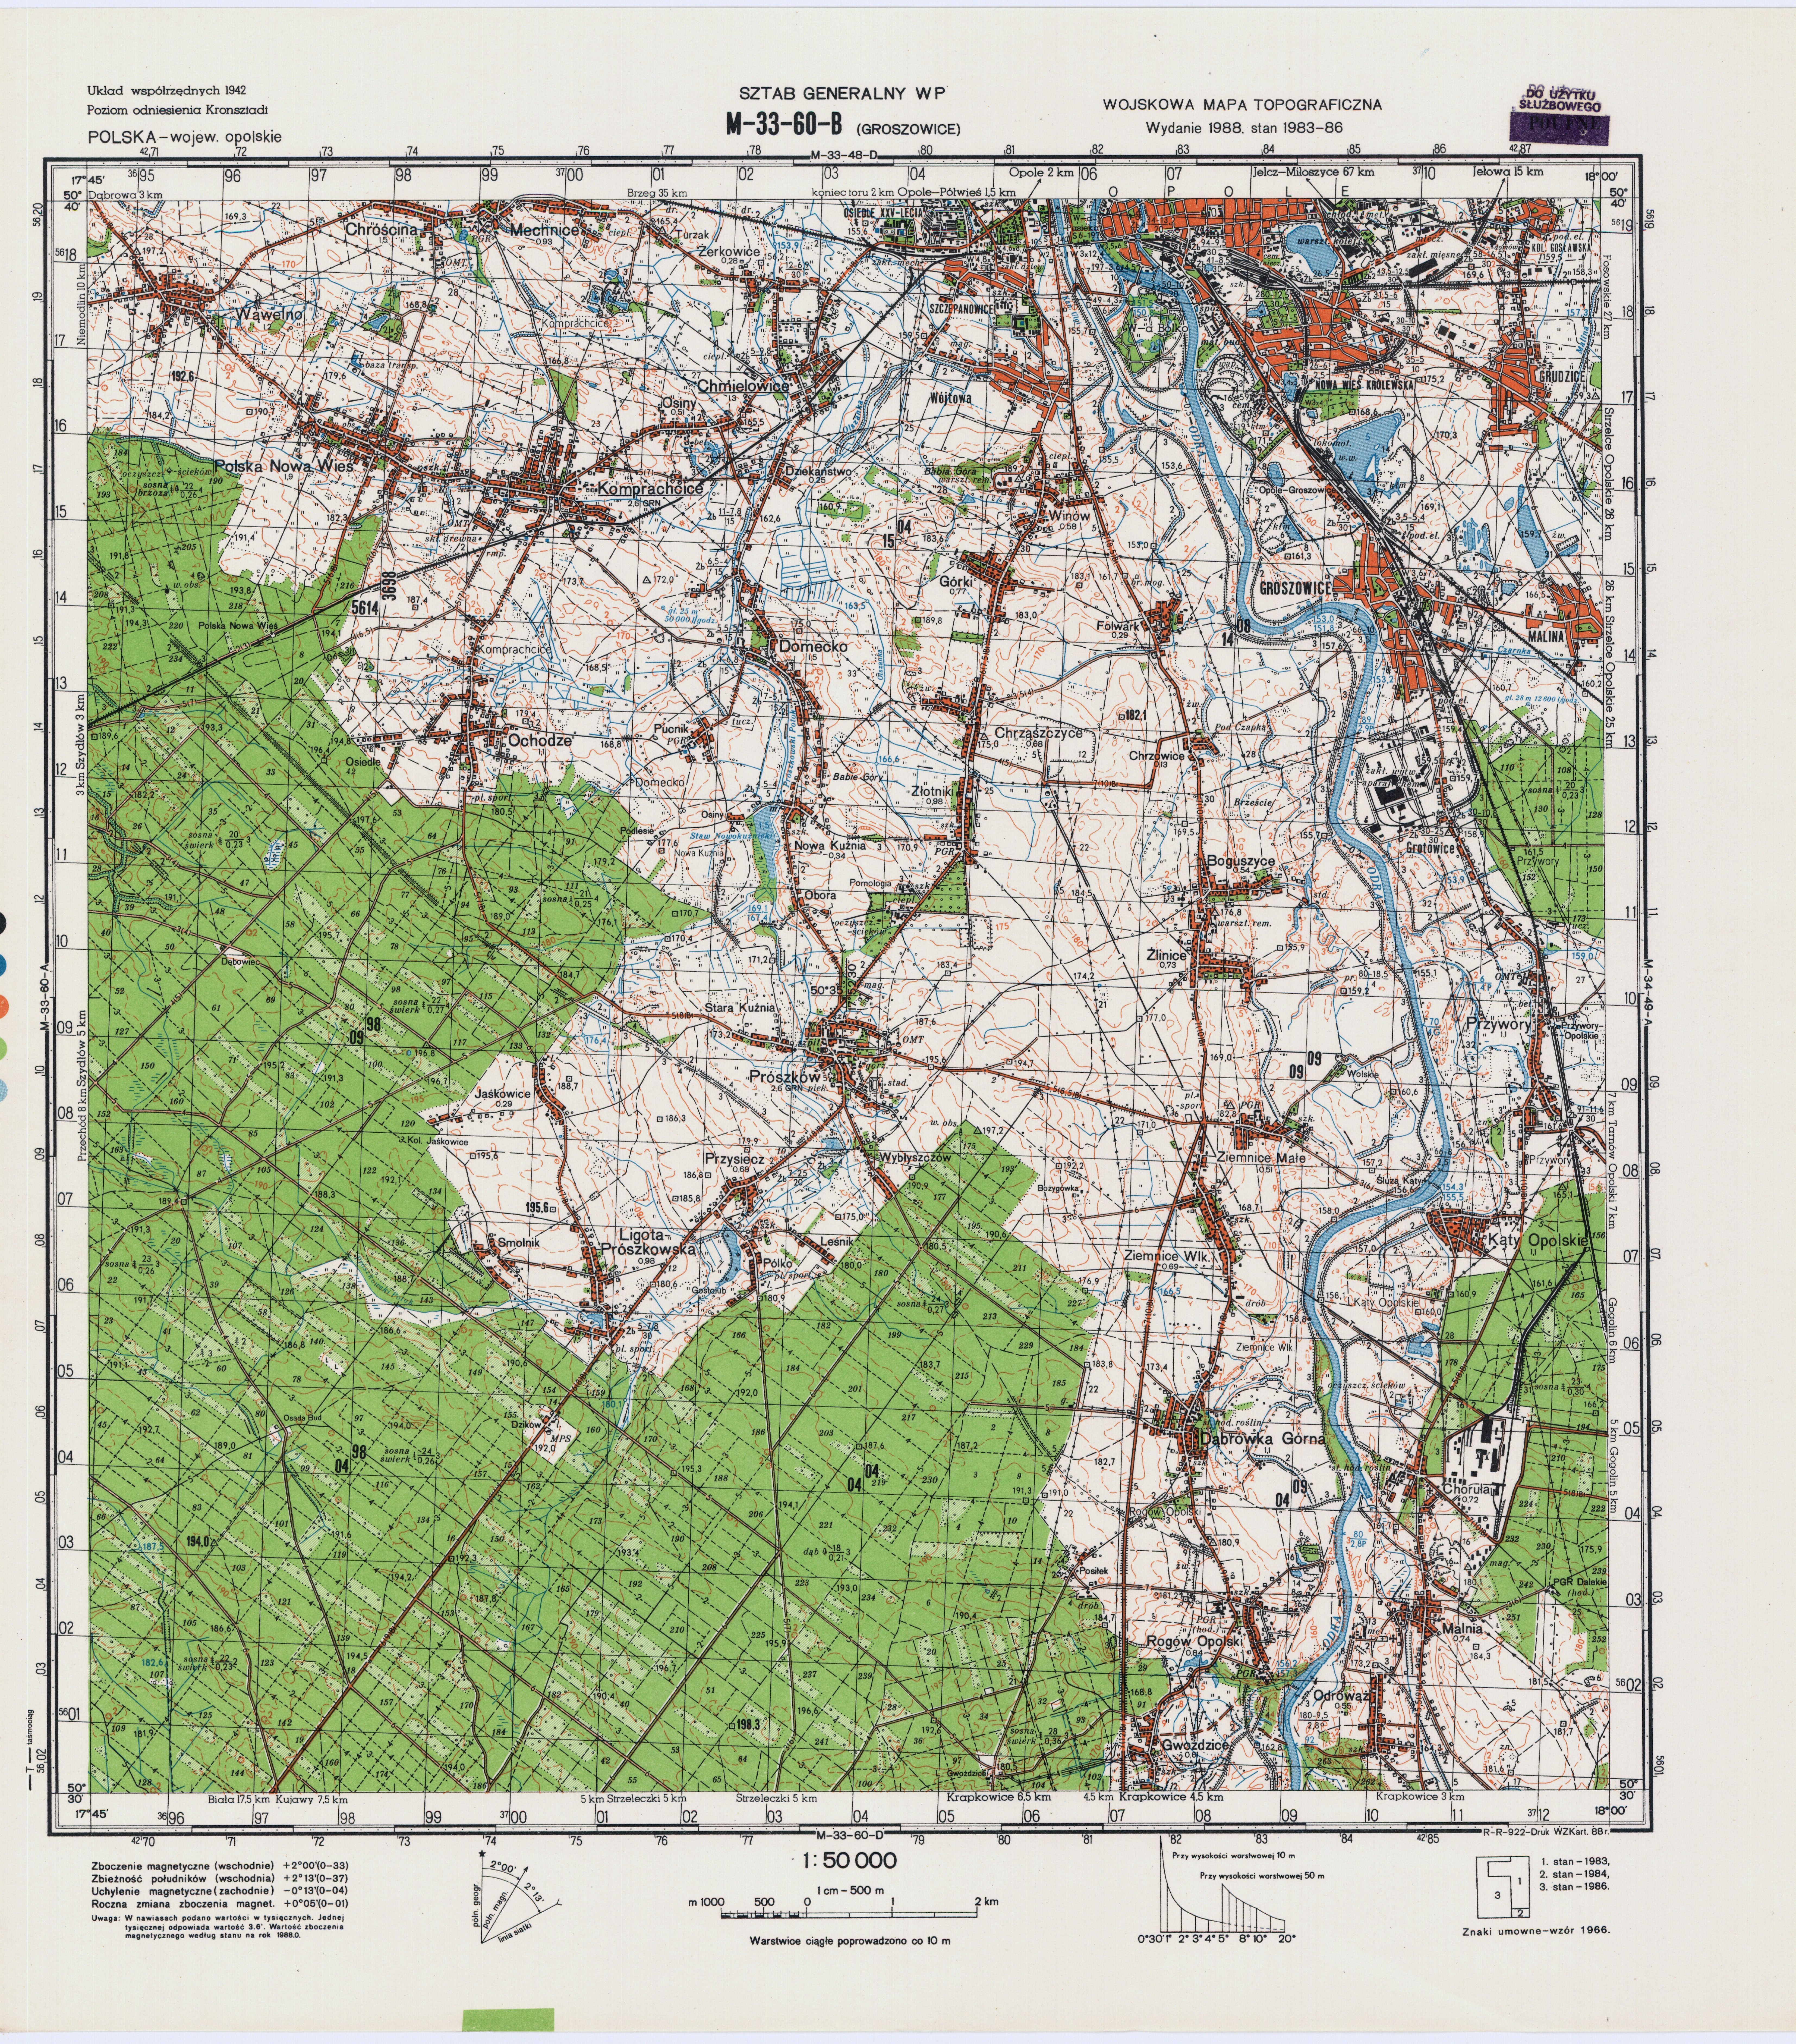 Mapy topograficzne LWP 1_50 000 - M-33-60-B_GROSZOWICE_1988.jpg